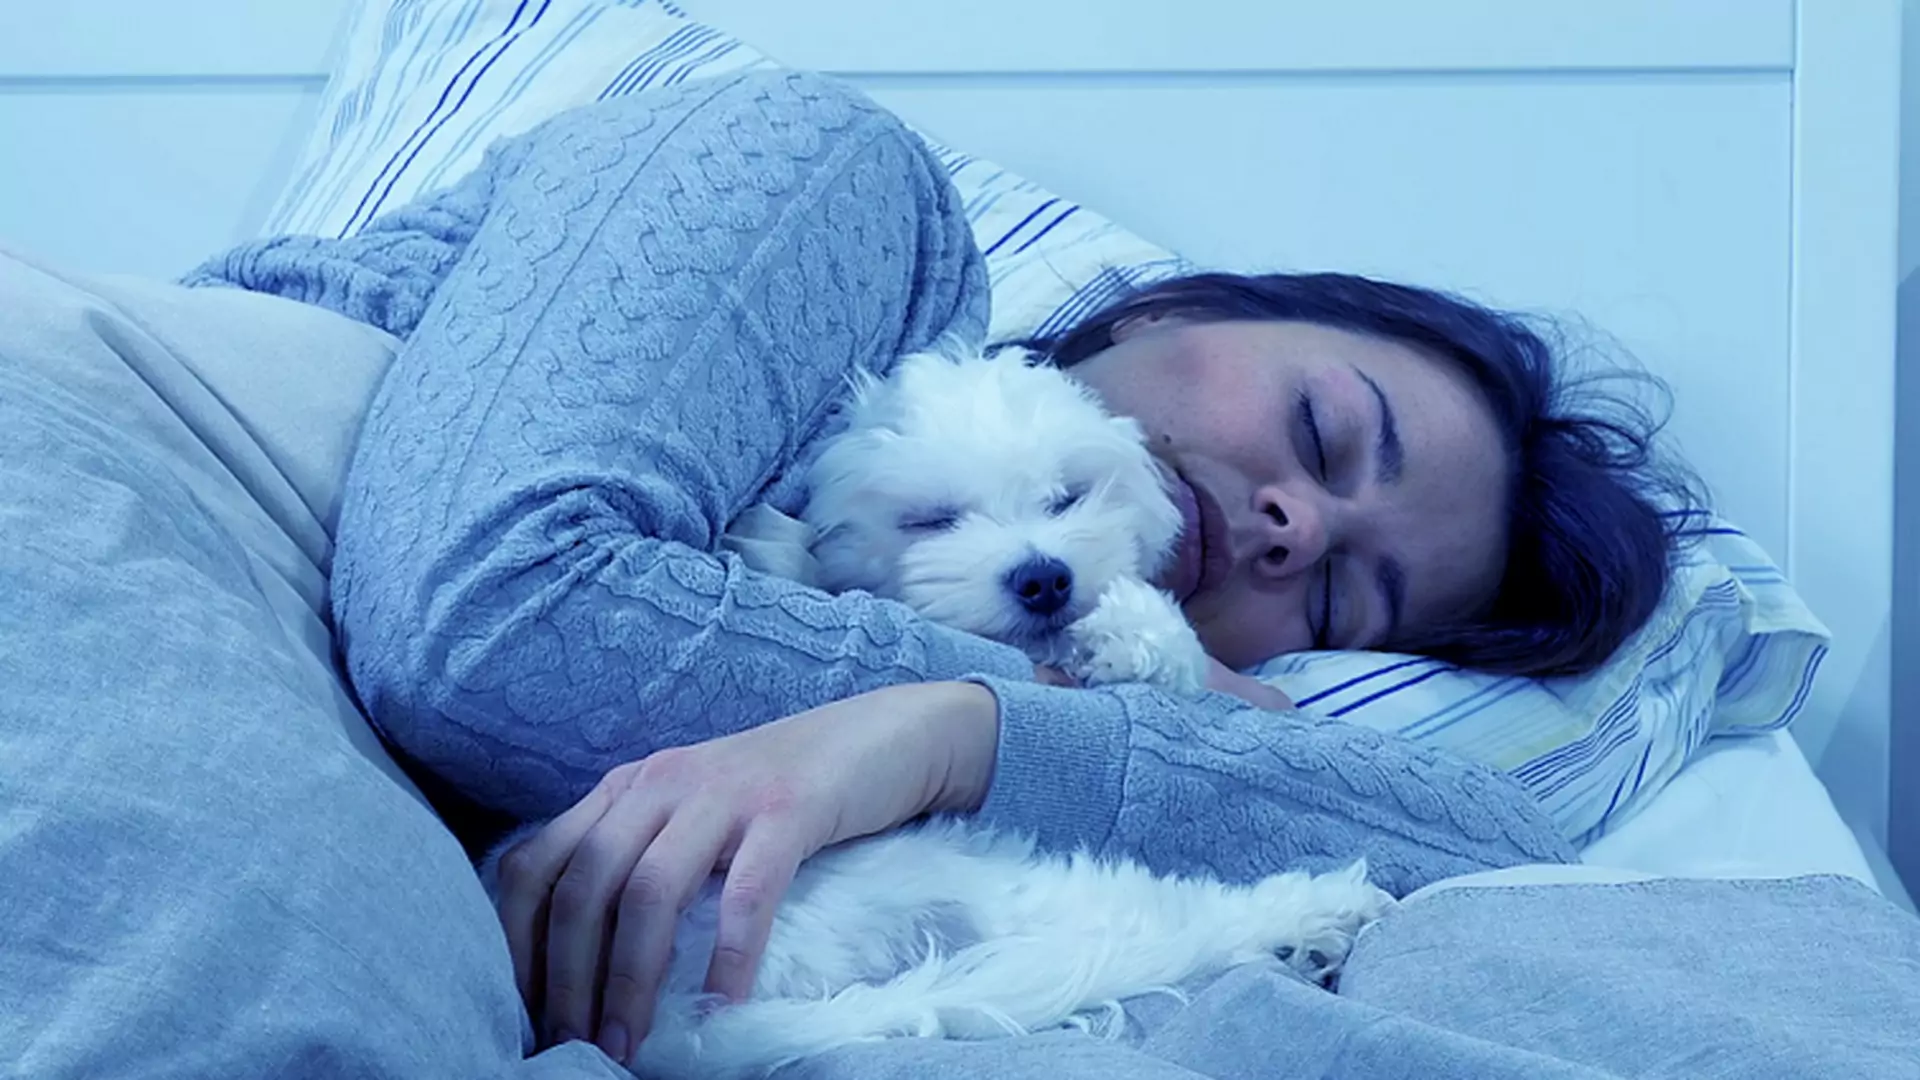 Faceci nie będą zachwyceni. Badania pokazują, że kobiety wolą spać z psami niż ze swoimi partnerami